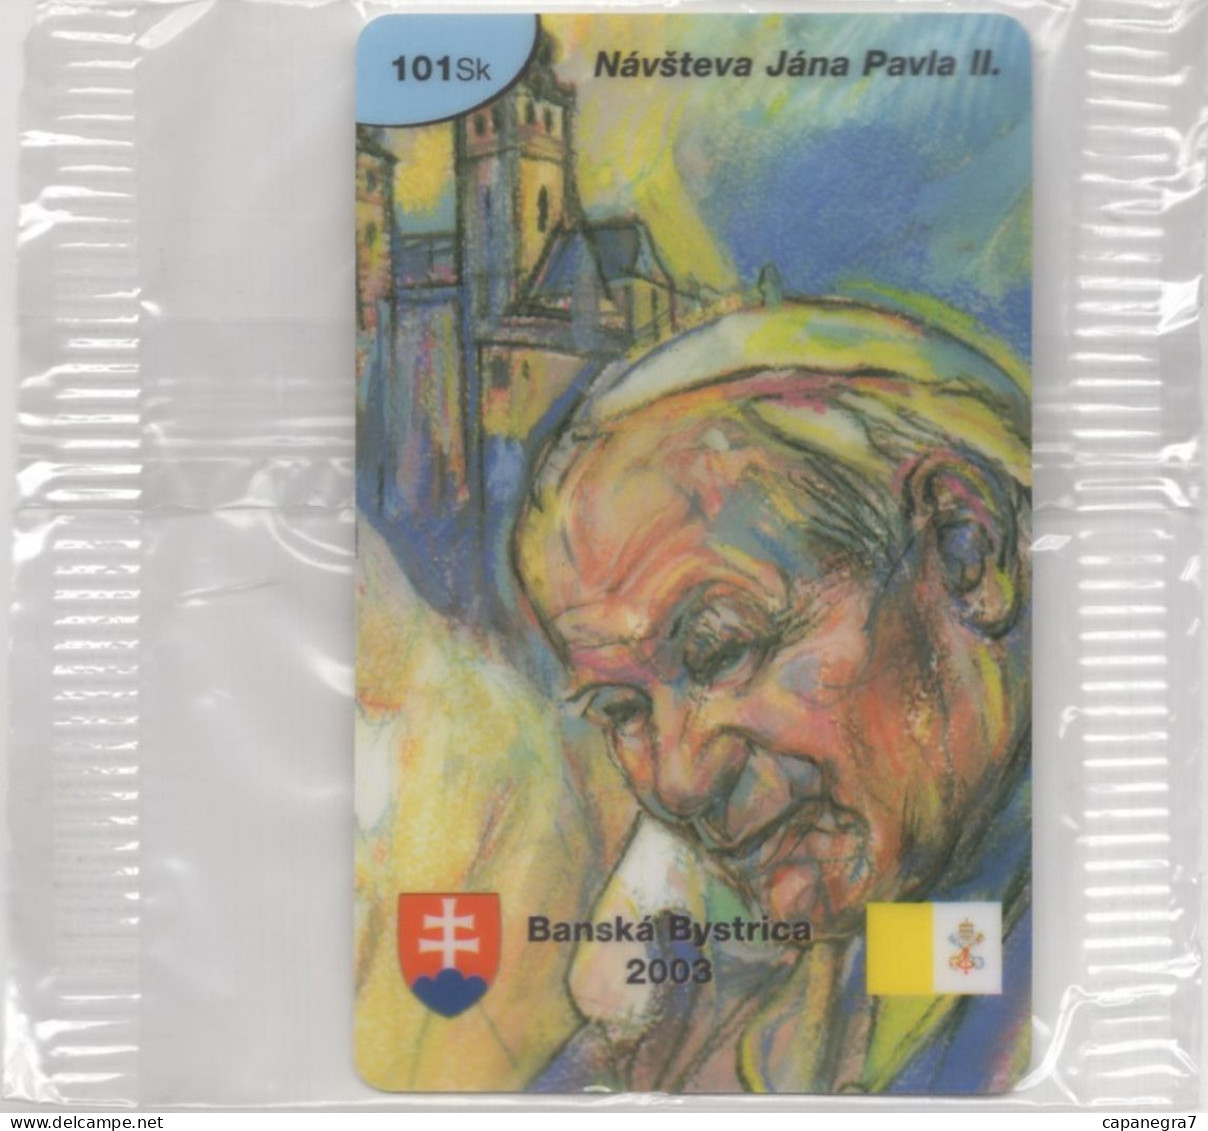 Pope John Paulu II. - Banská Bystica 2003, Prepaid Calling Card, 101 Sk., 1.250 Pc., GlobalIPhone, Slovak, Mint, Packed - Slovakia